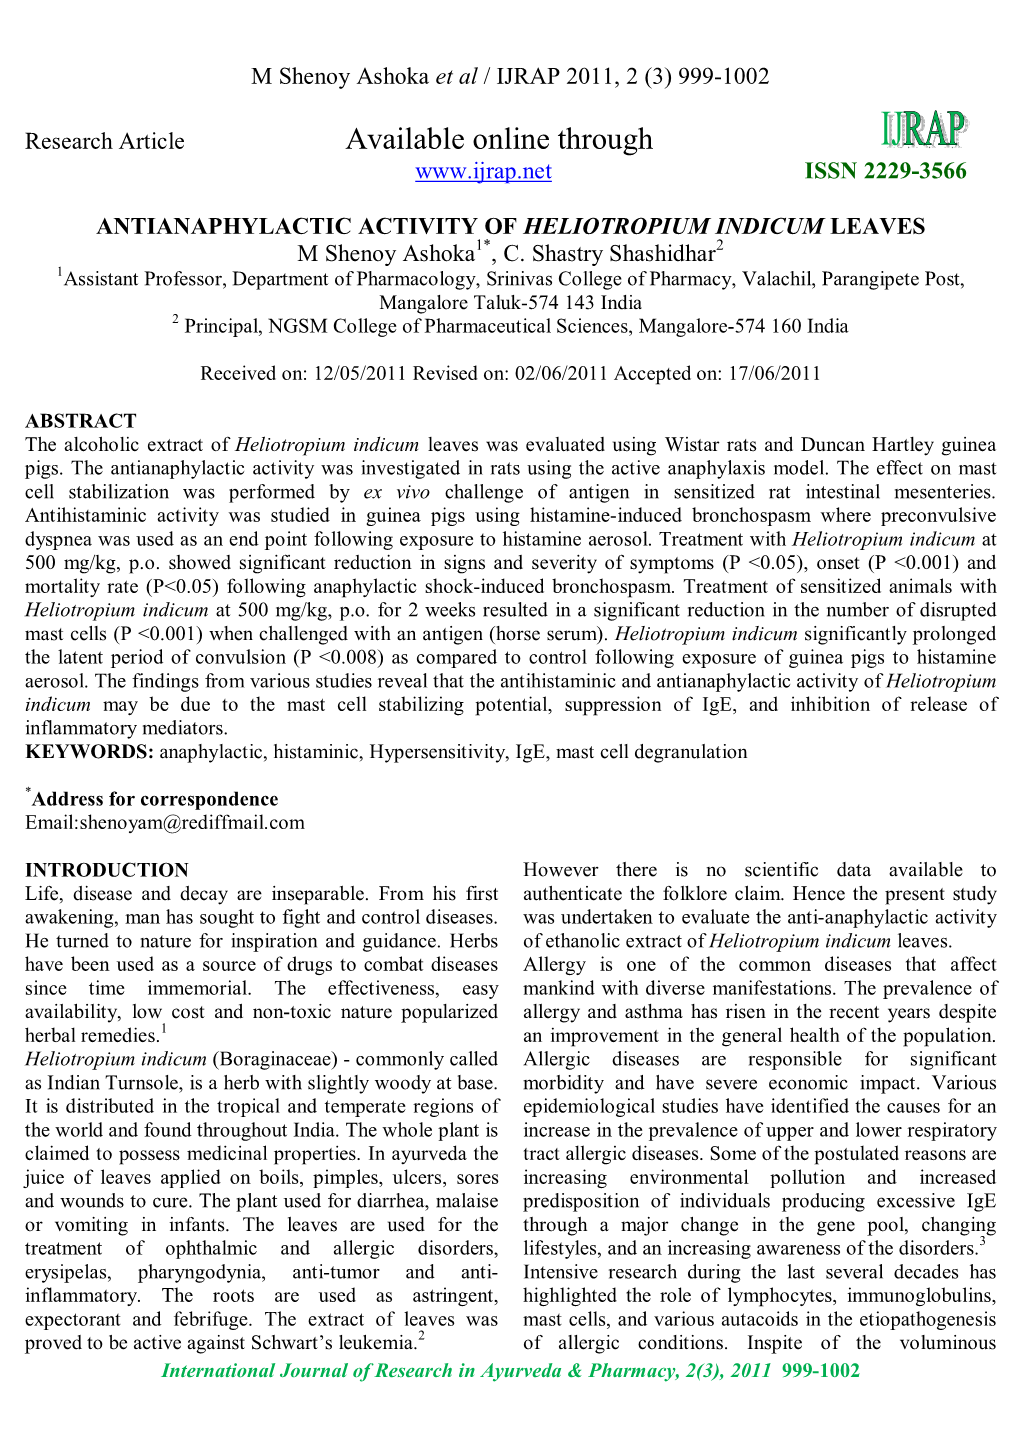 ANTIANAPHYLACTIC ACTIVITY of HELIOTROPIUM INDICUM LEAVES M Shenoy Ashoka1*, C